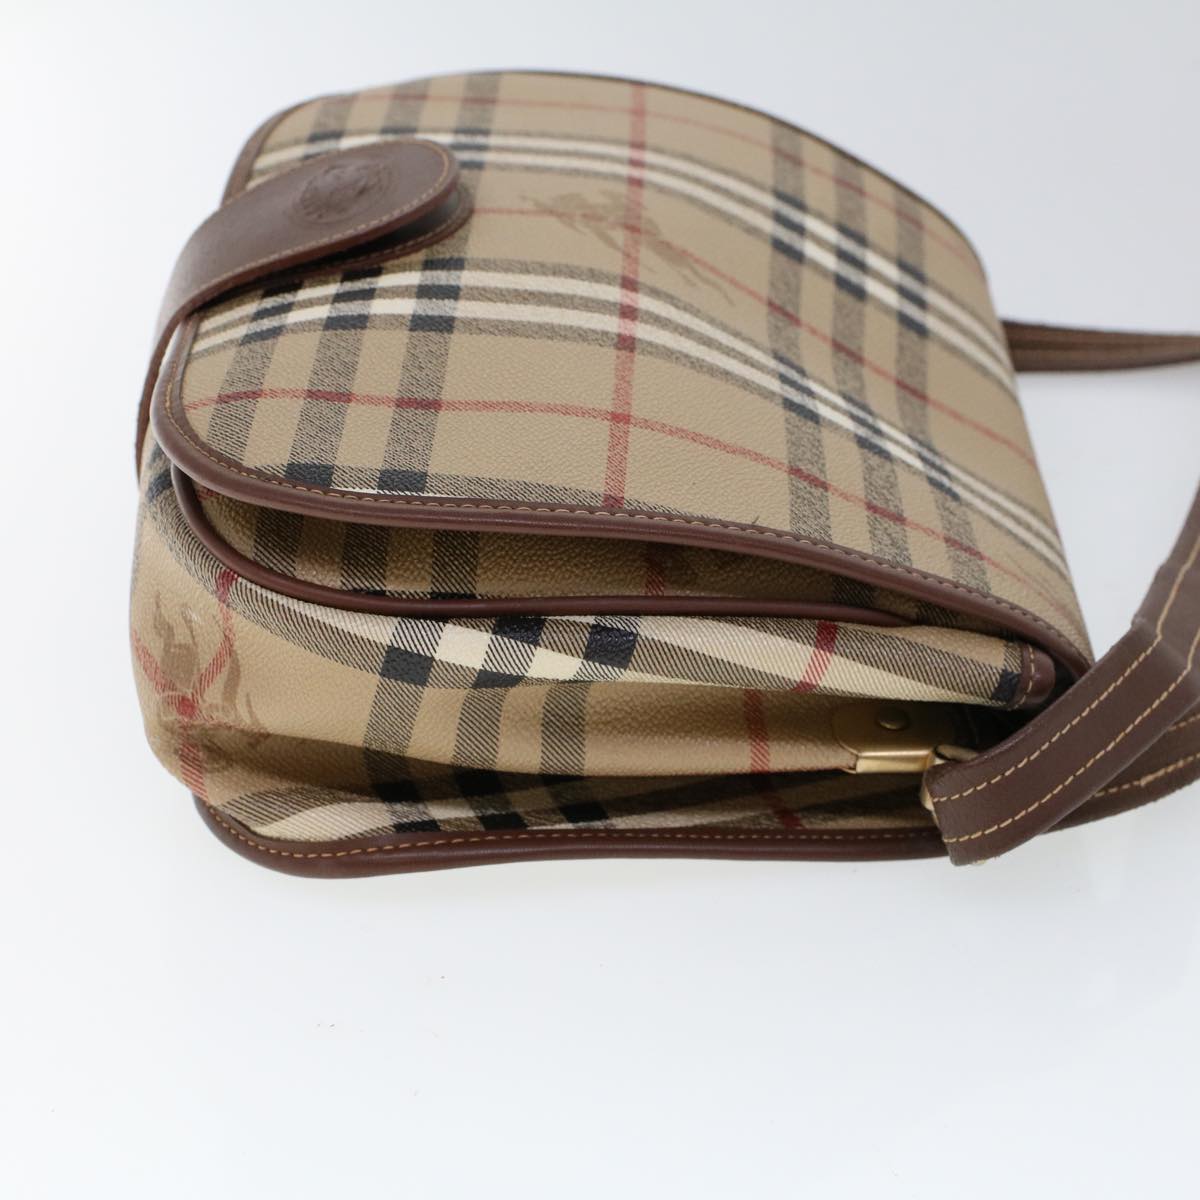 Burberrys Nova Check Shoulder Bag PVC Leather Beige Brown Auth 53779